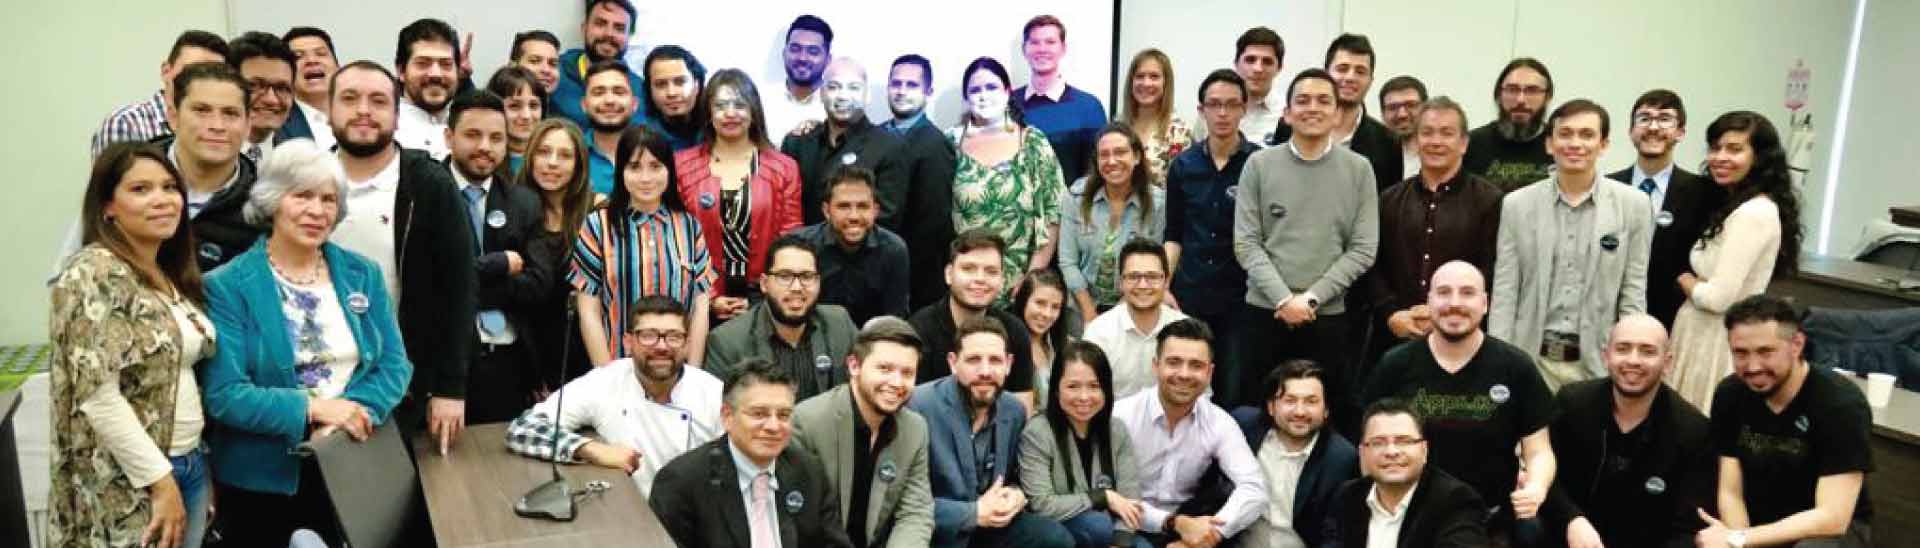 ¡Somos la primera Universidad experta en negocios digitales de Colombia!